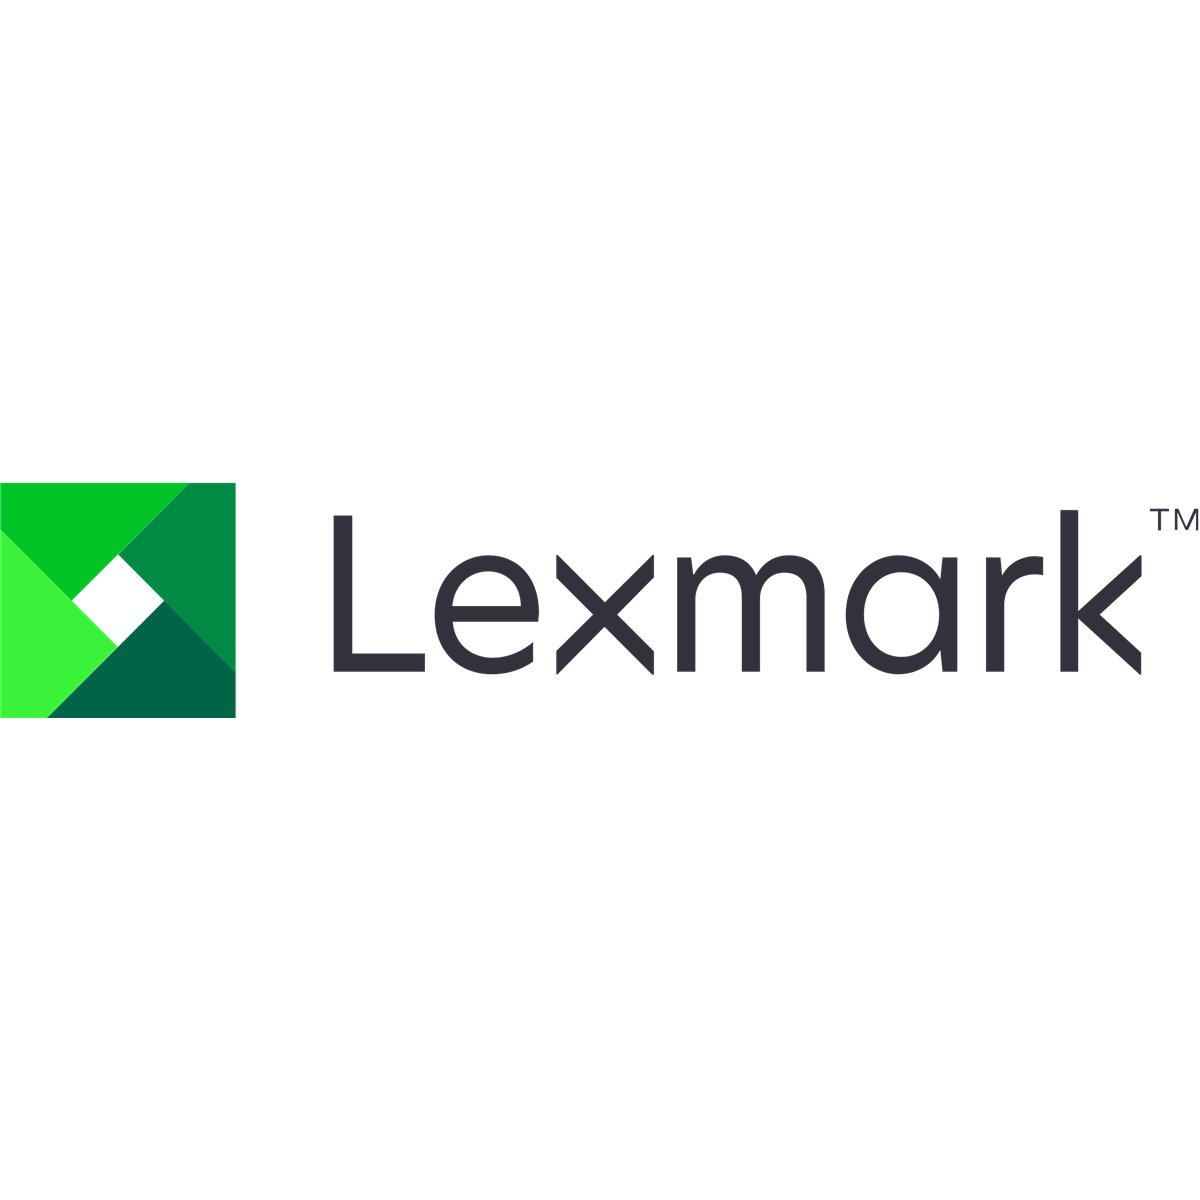 Lexmark Bracket finisher docking